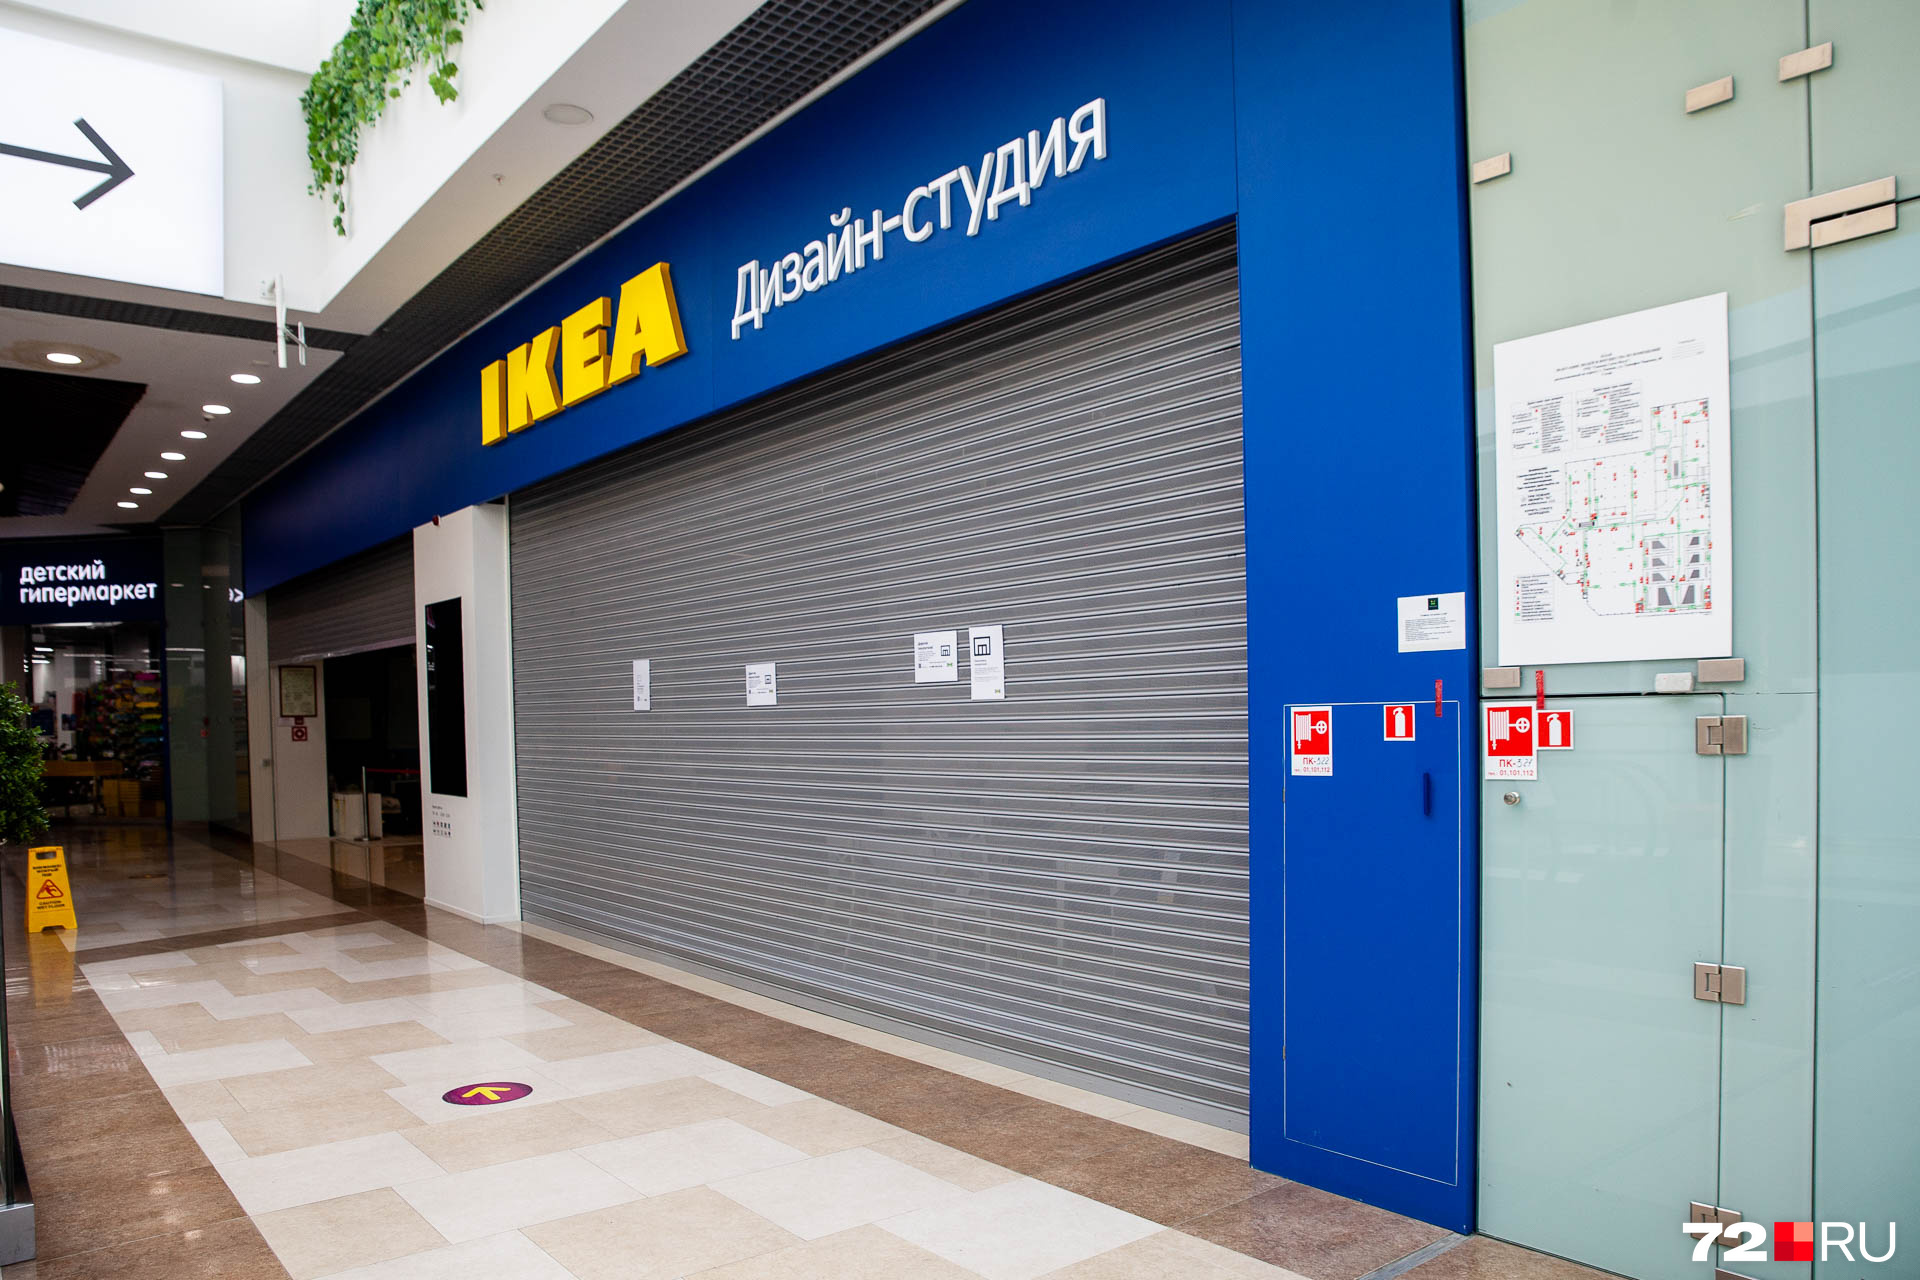 В Тюмени была дизайн-студия IKEA. Она располагалась в ТРЦ «Тюмень Сити Молл». После начала СВО нидерландская компания со шведскими корнями покинула Россию